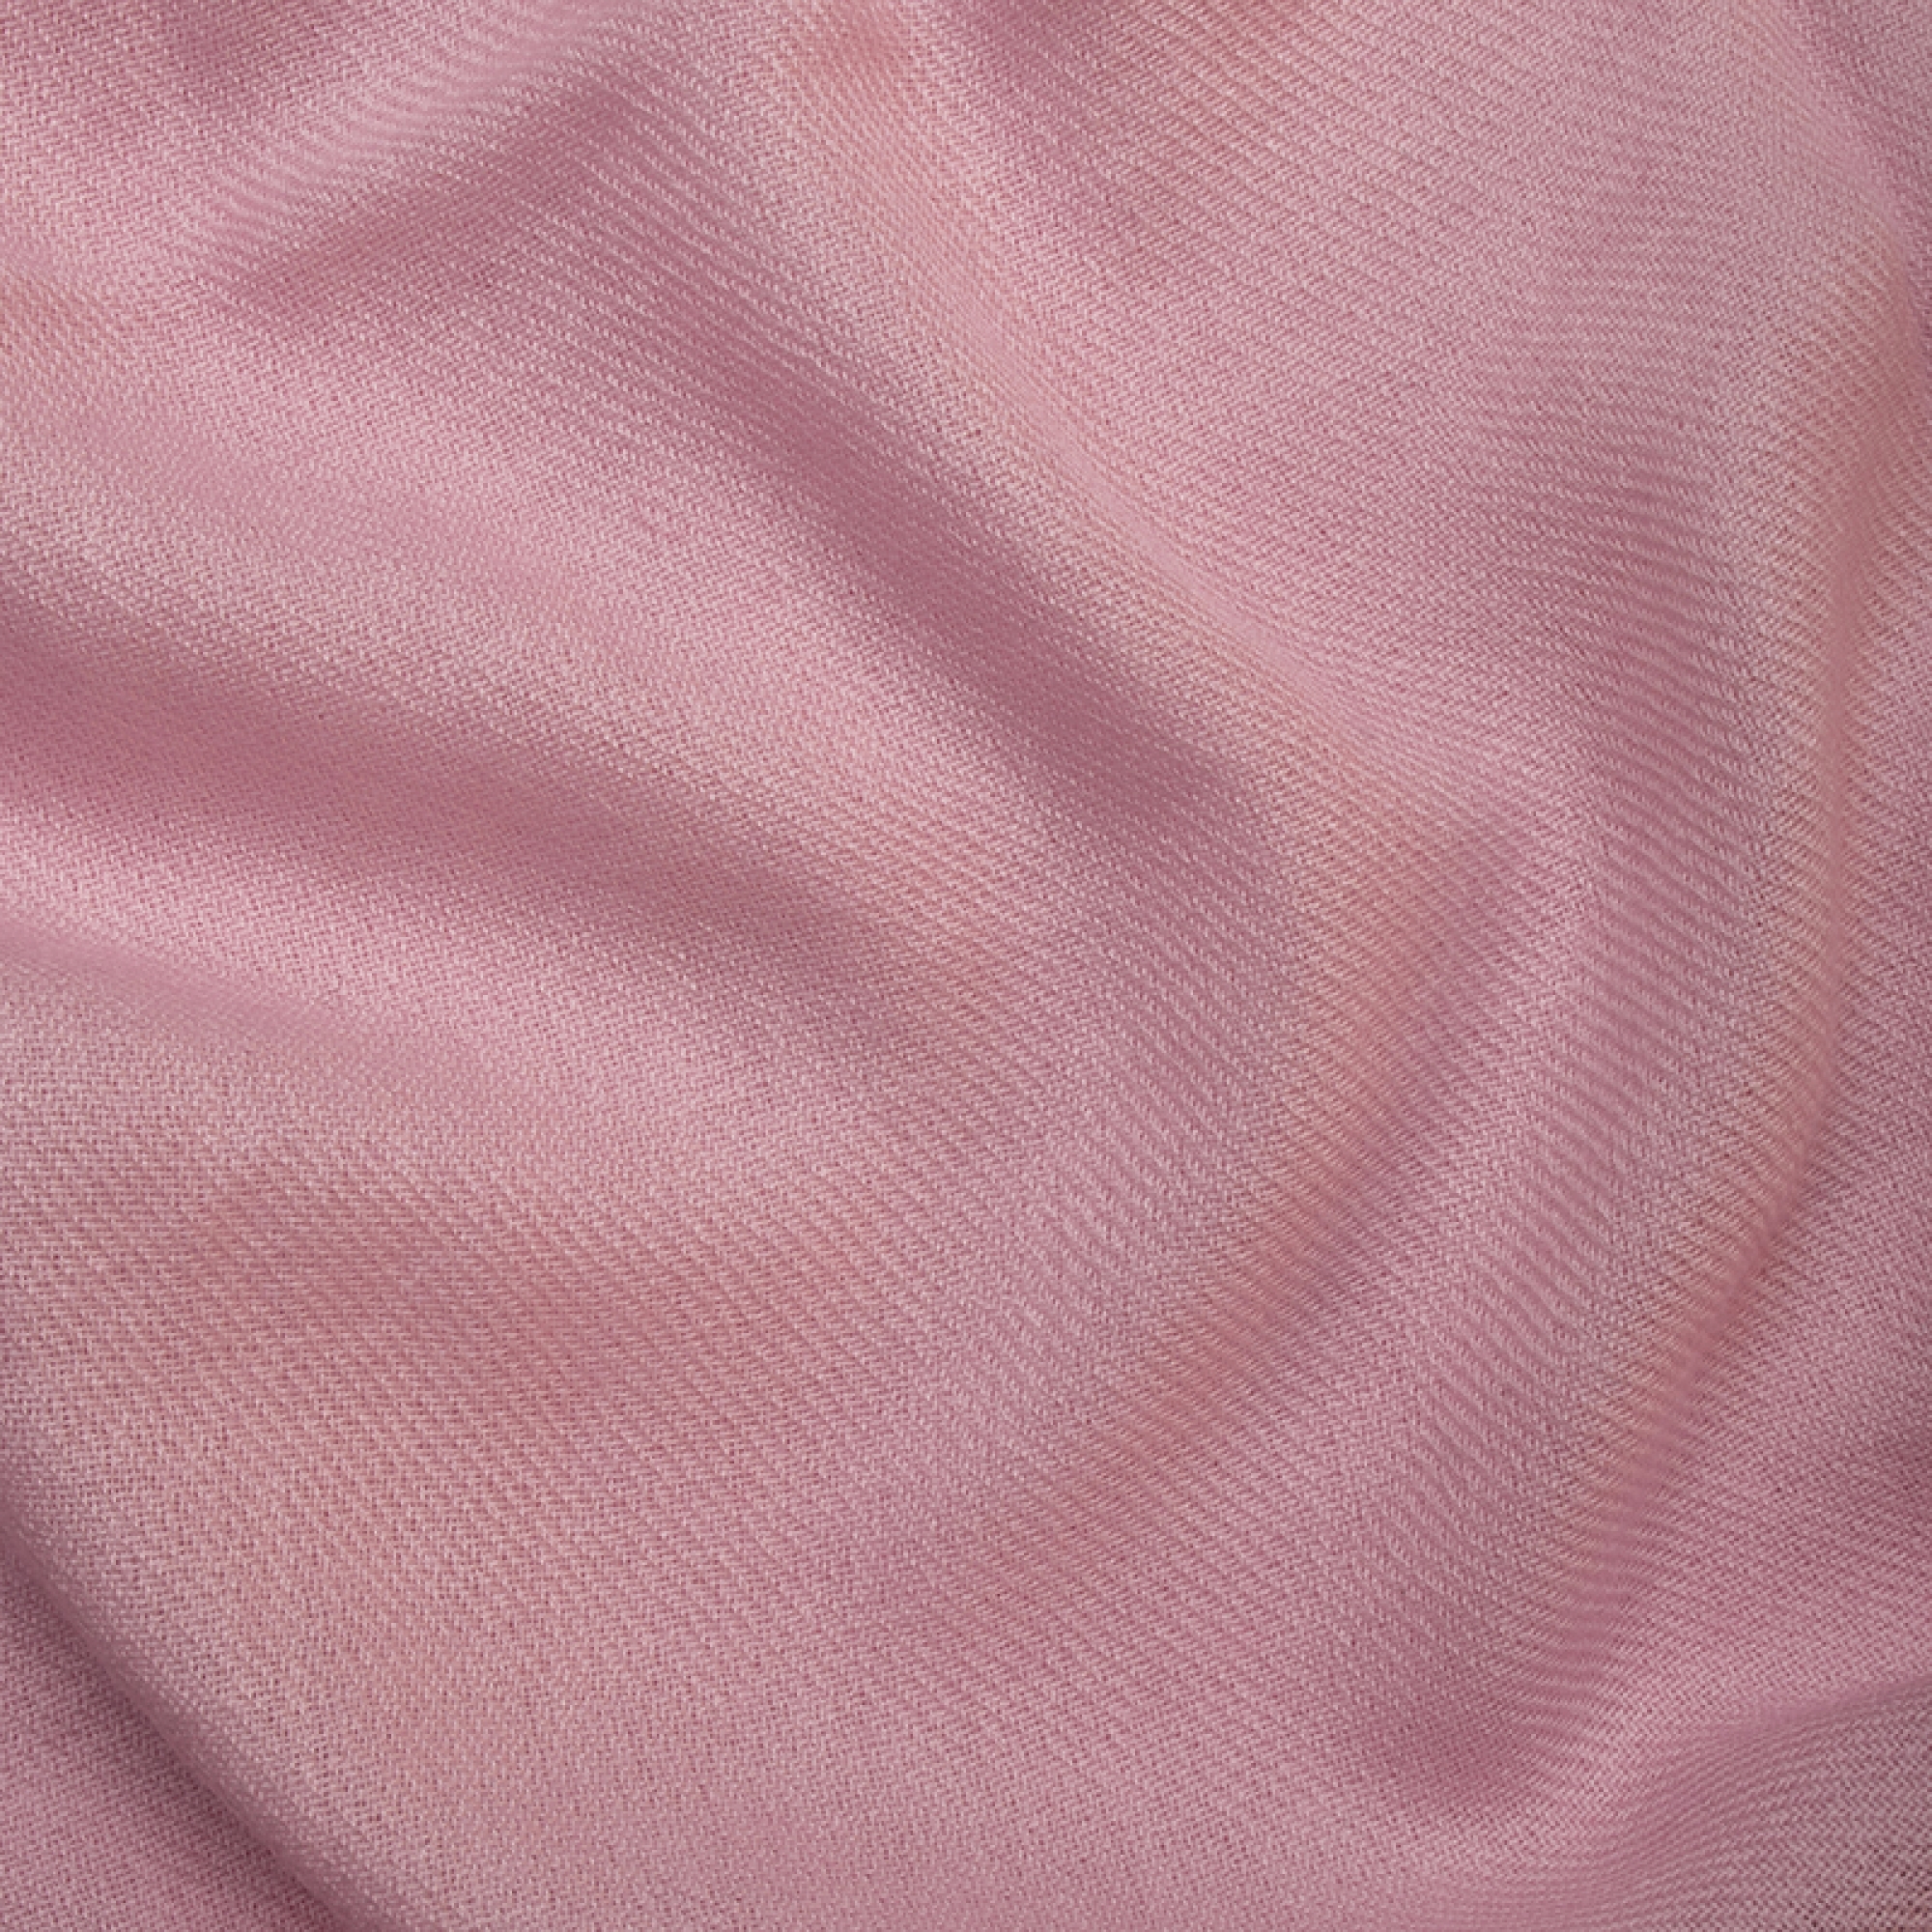 Cashmere accessori cocooning toodoo plain m 180 x 220 rosa pallido 180 x 220 cm